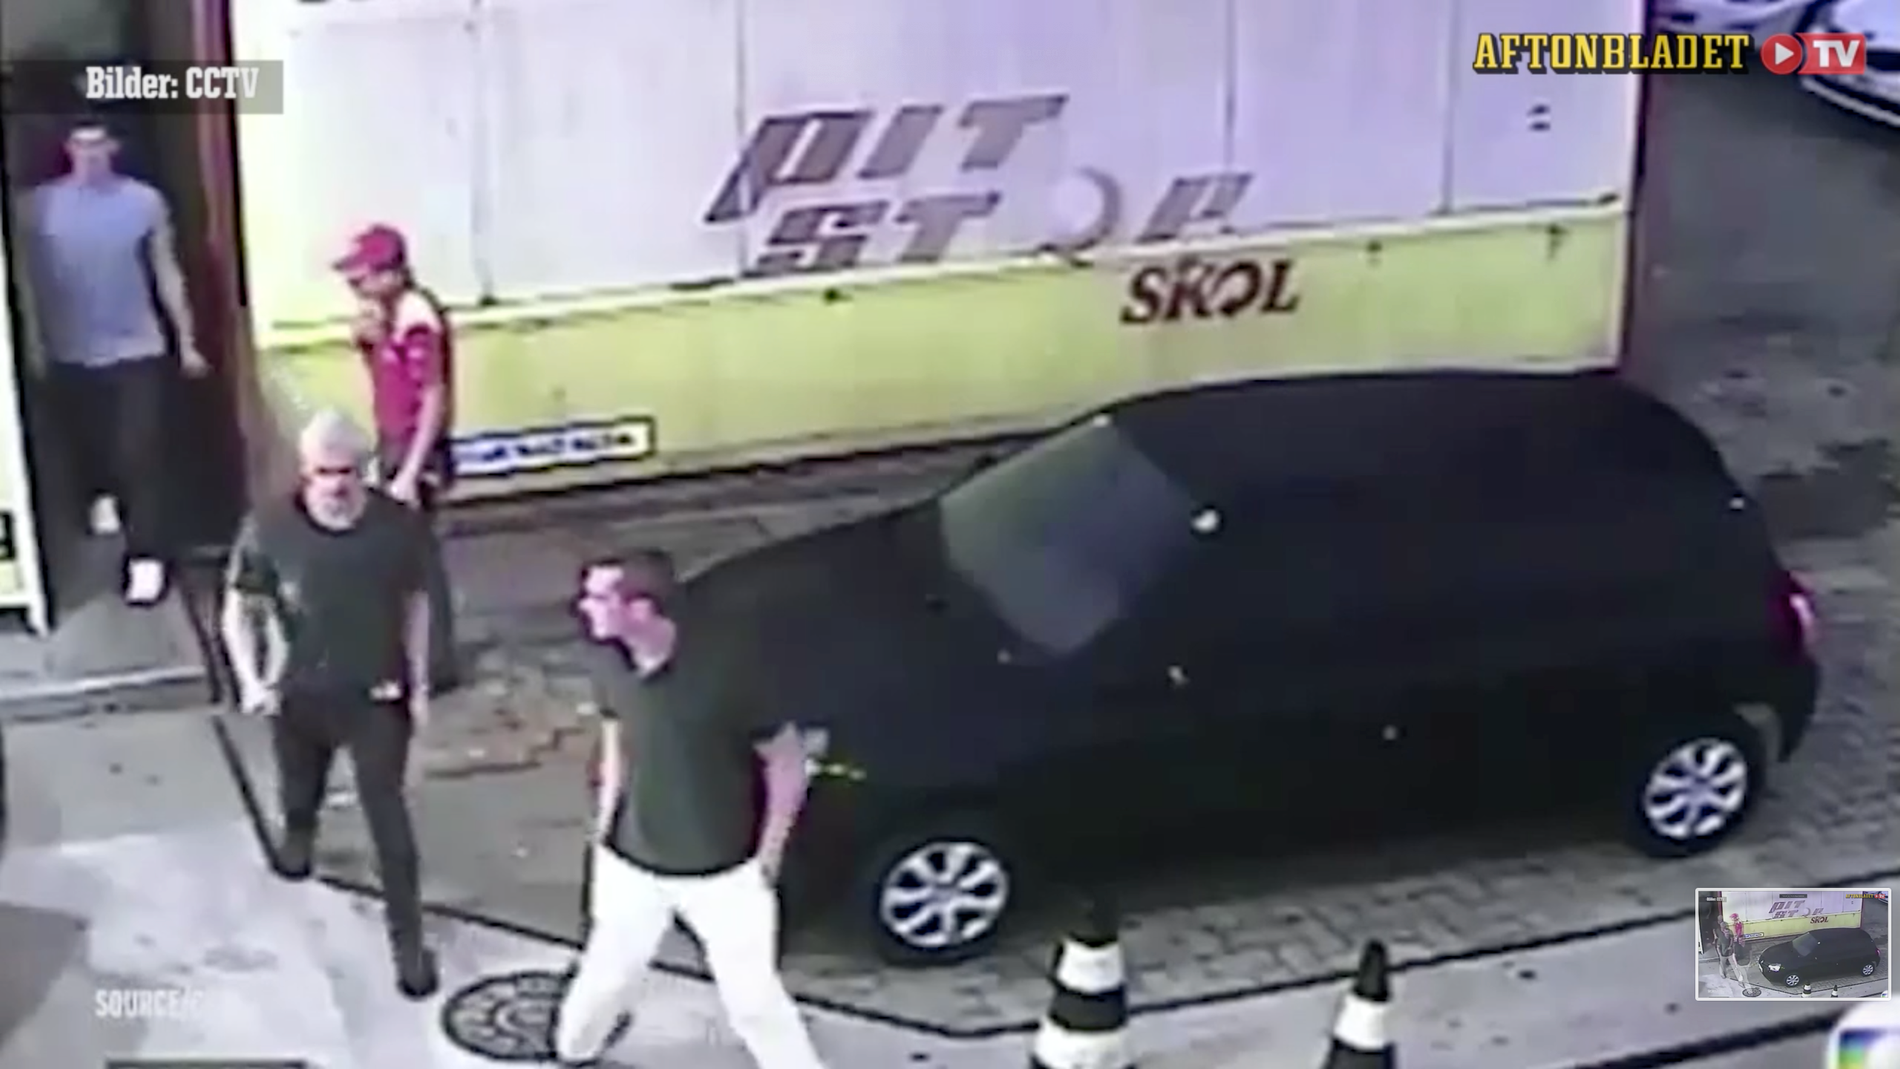 Övervakningsbilder från bensinmacken där Ryan Lochte påstod sig ha blivit utsatt för ett väpnat rån.